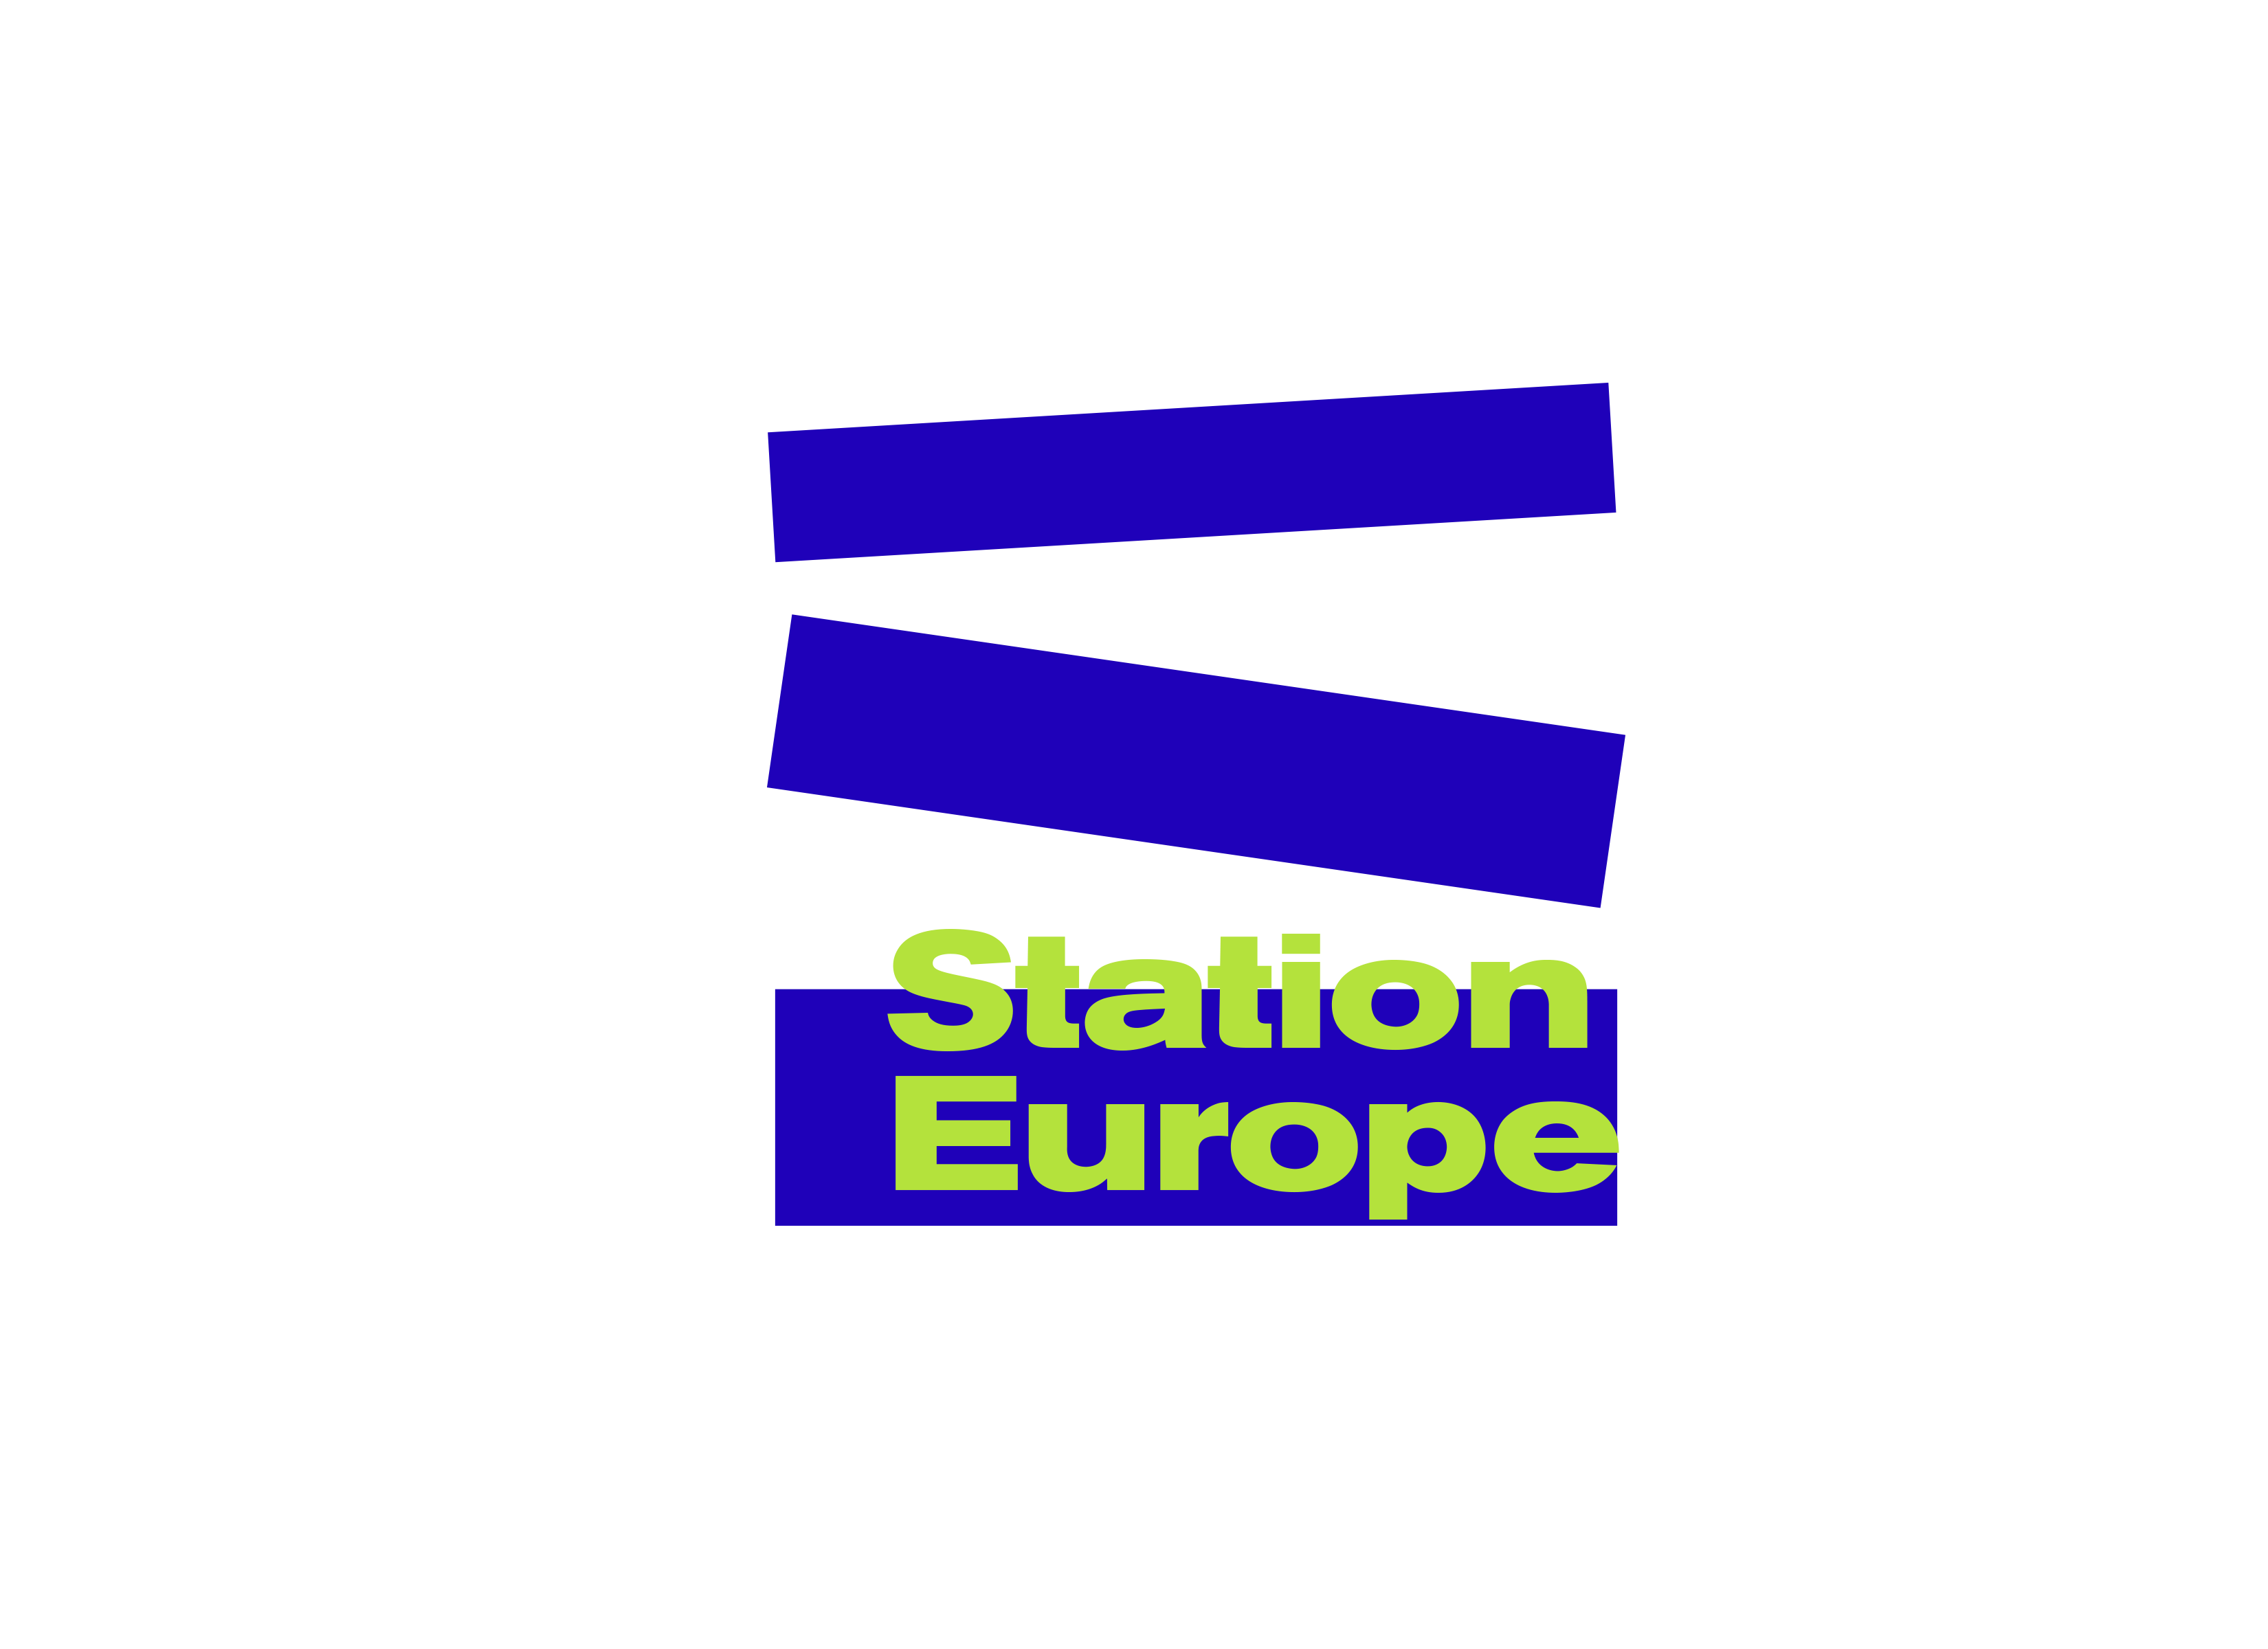 Station Europe - Stația Europa logo